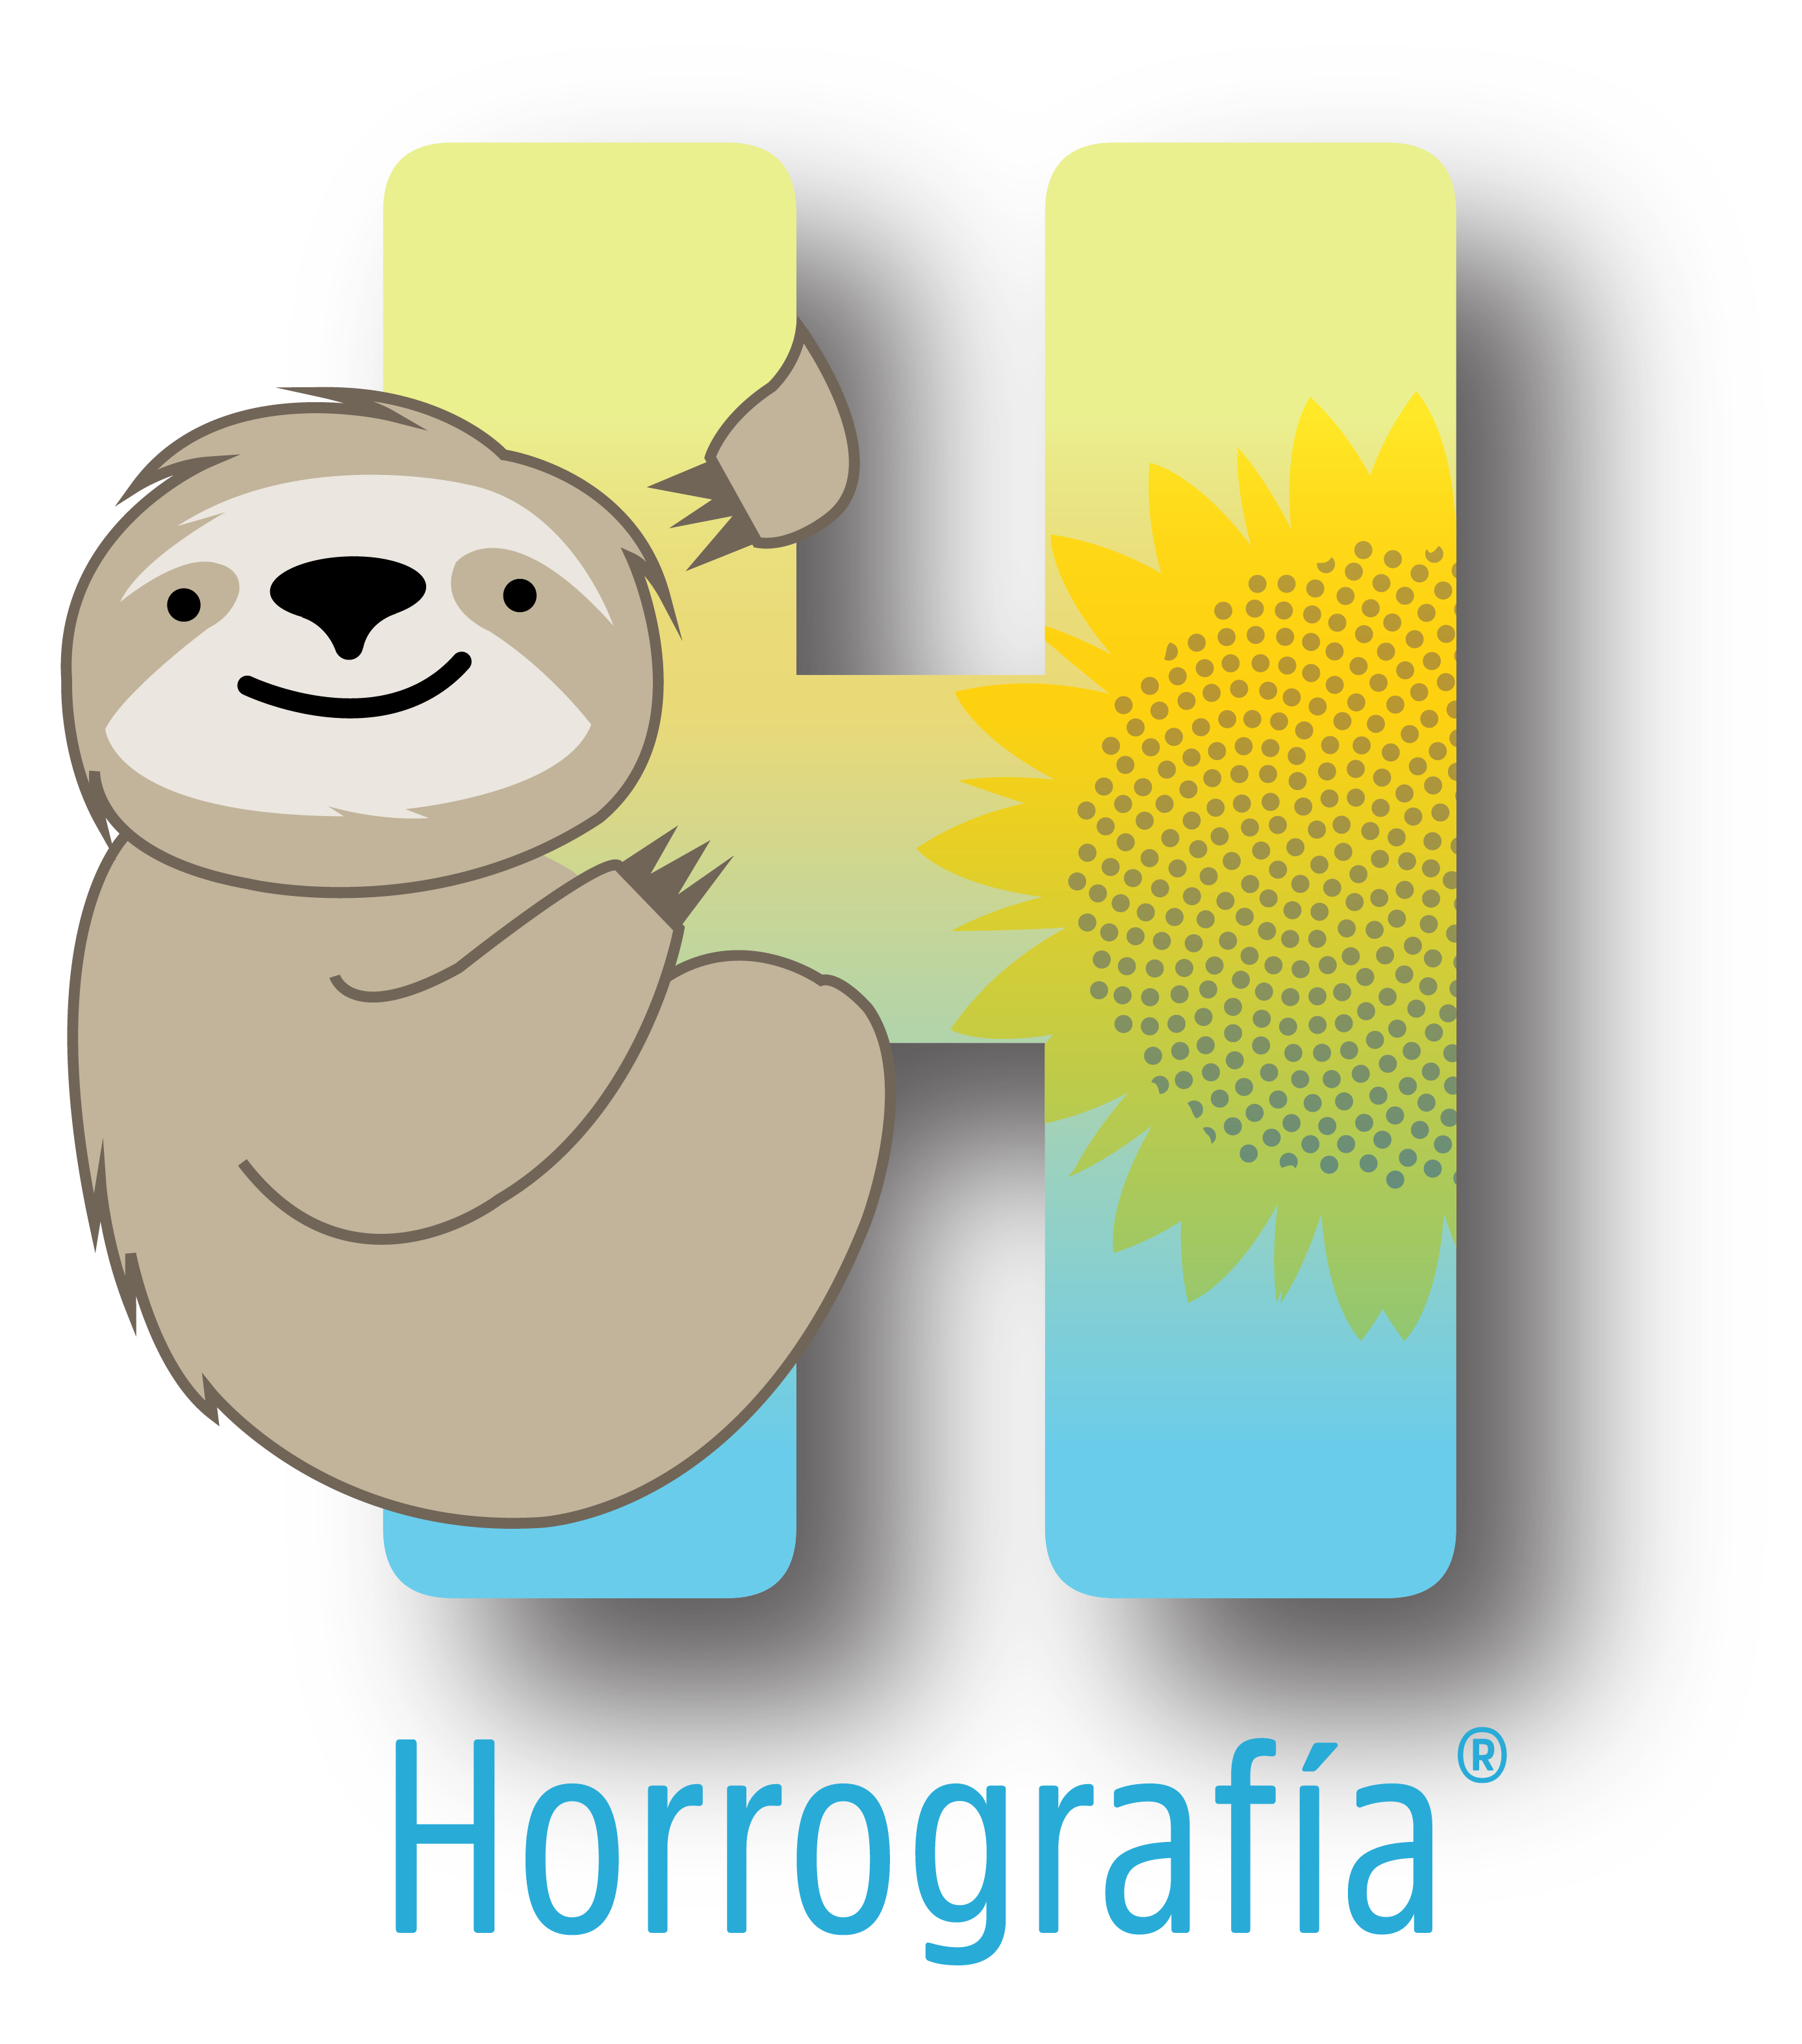 Logo de la aplicación Horrografía: un perezoso sobre una H